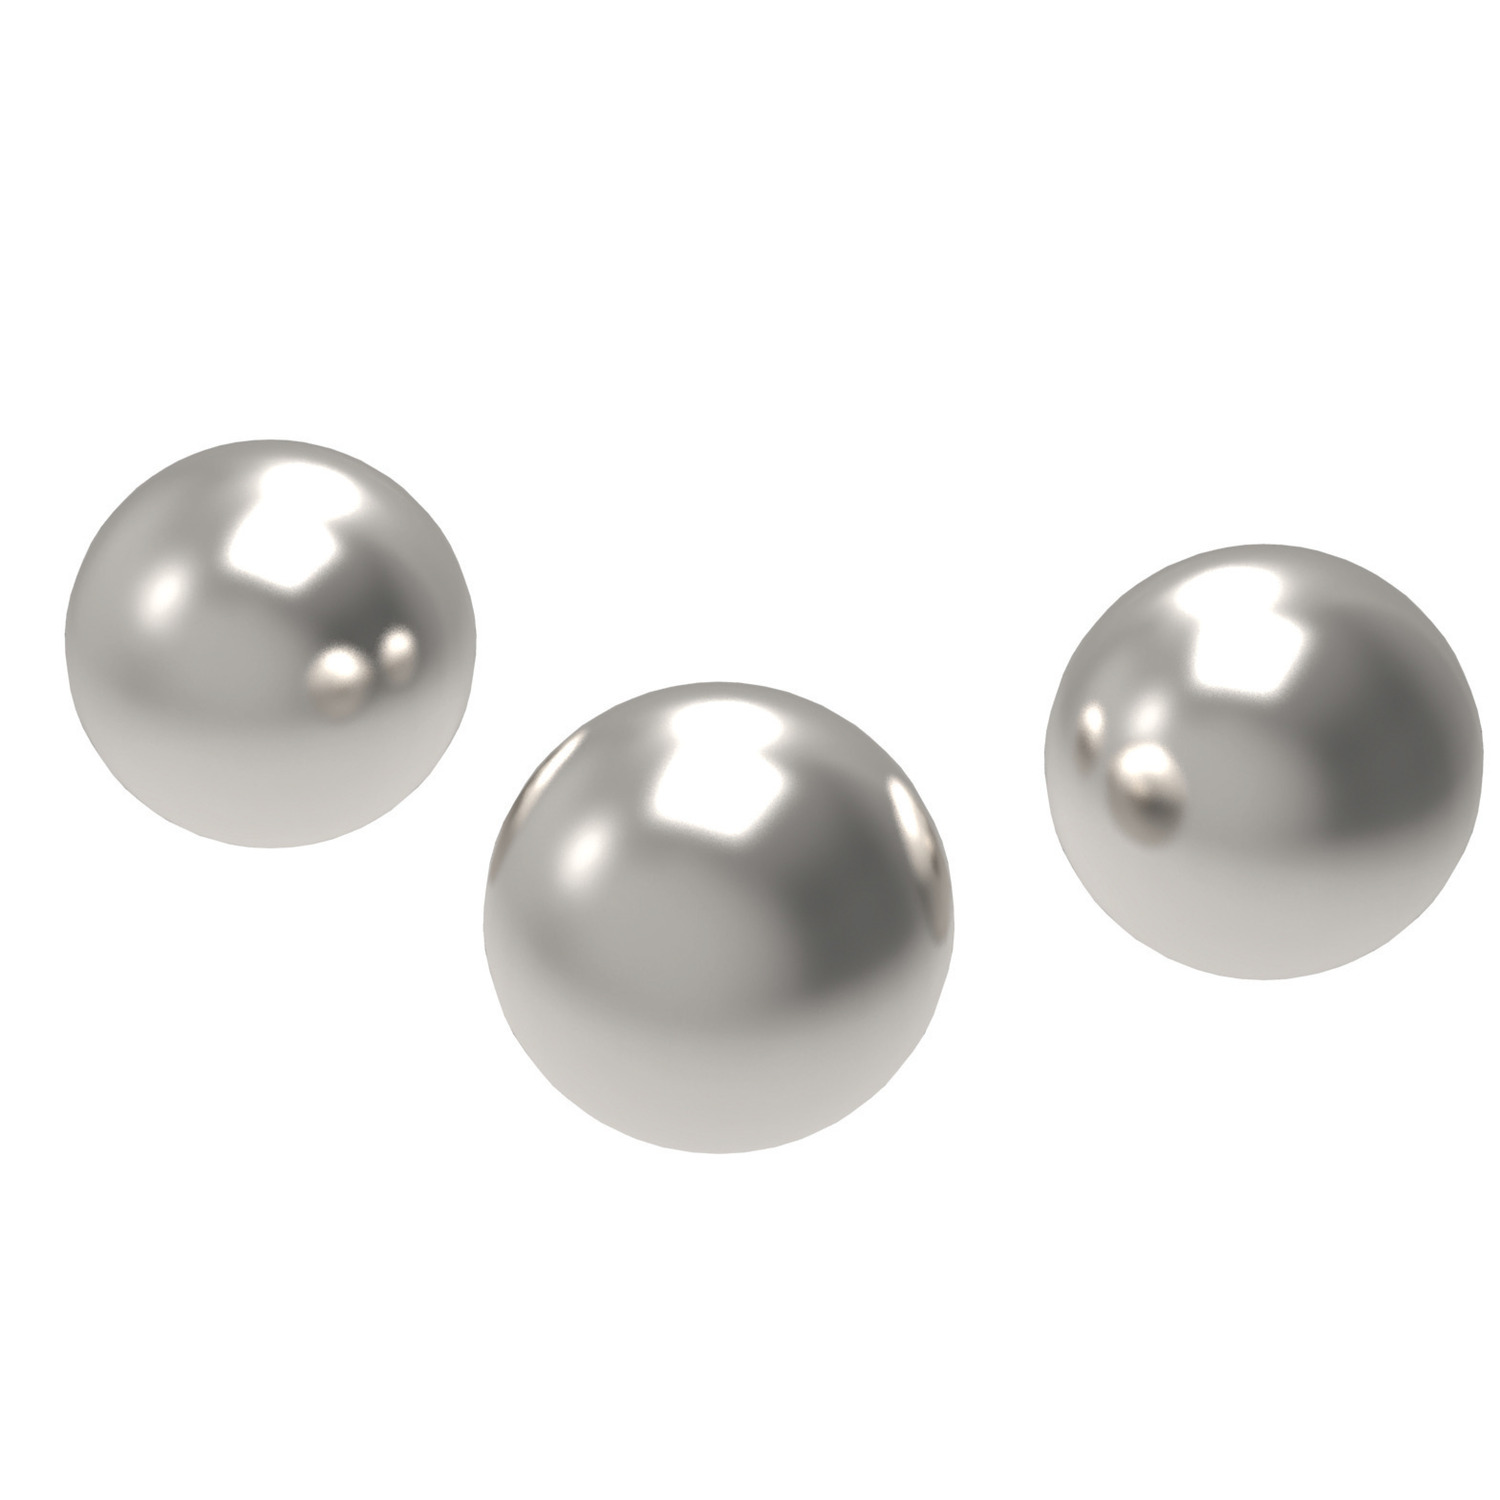 P1350 Ball Bearings